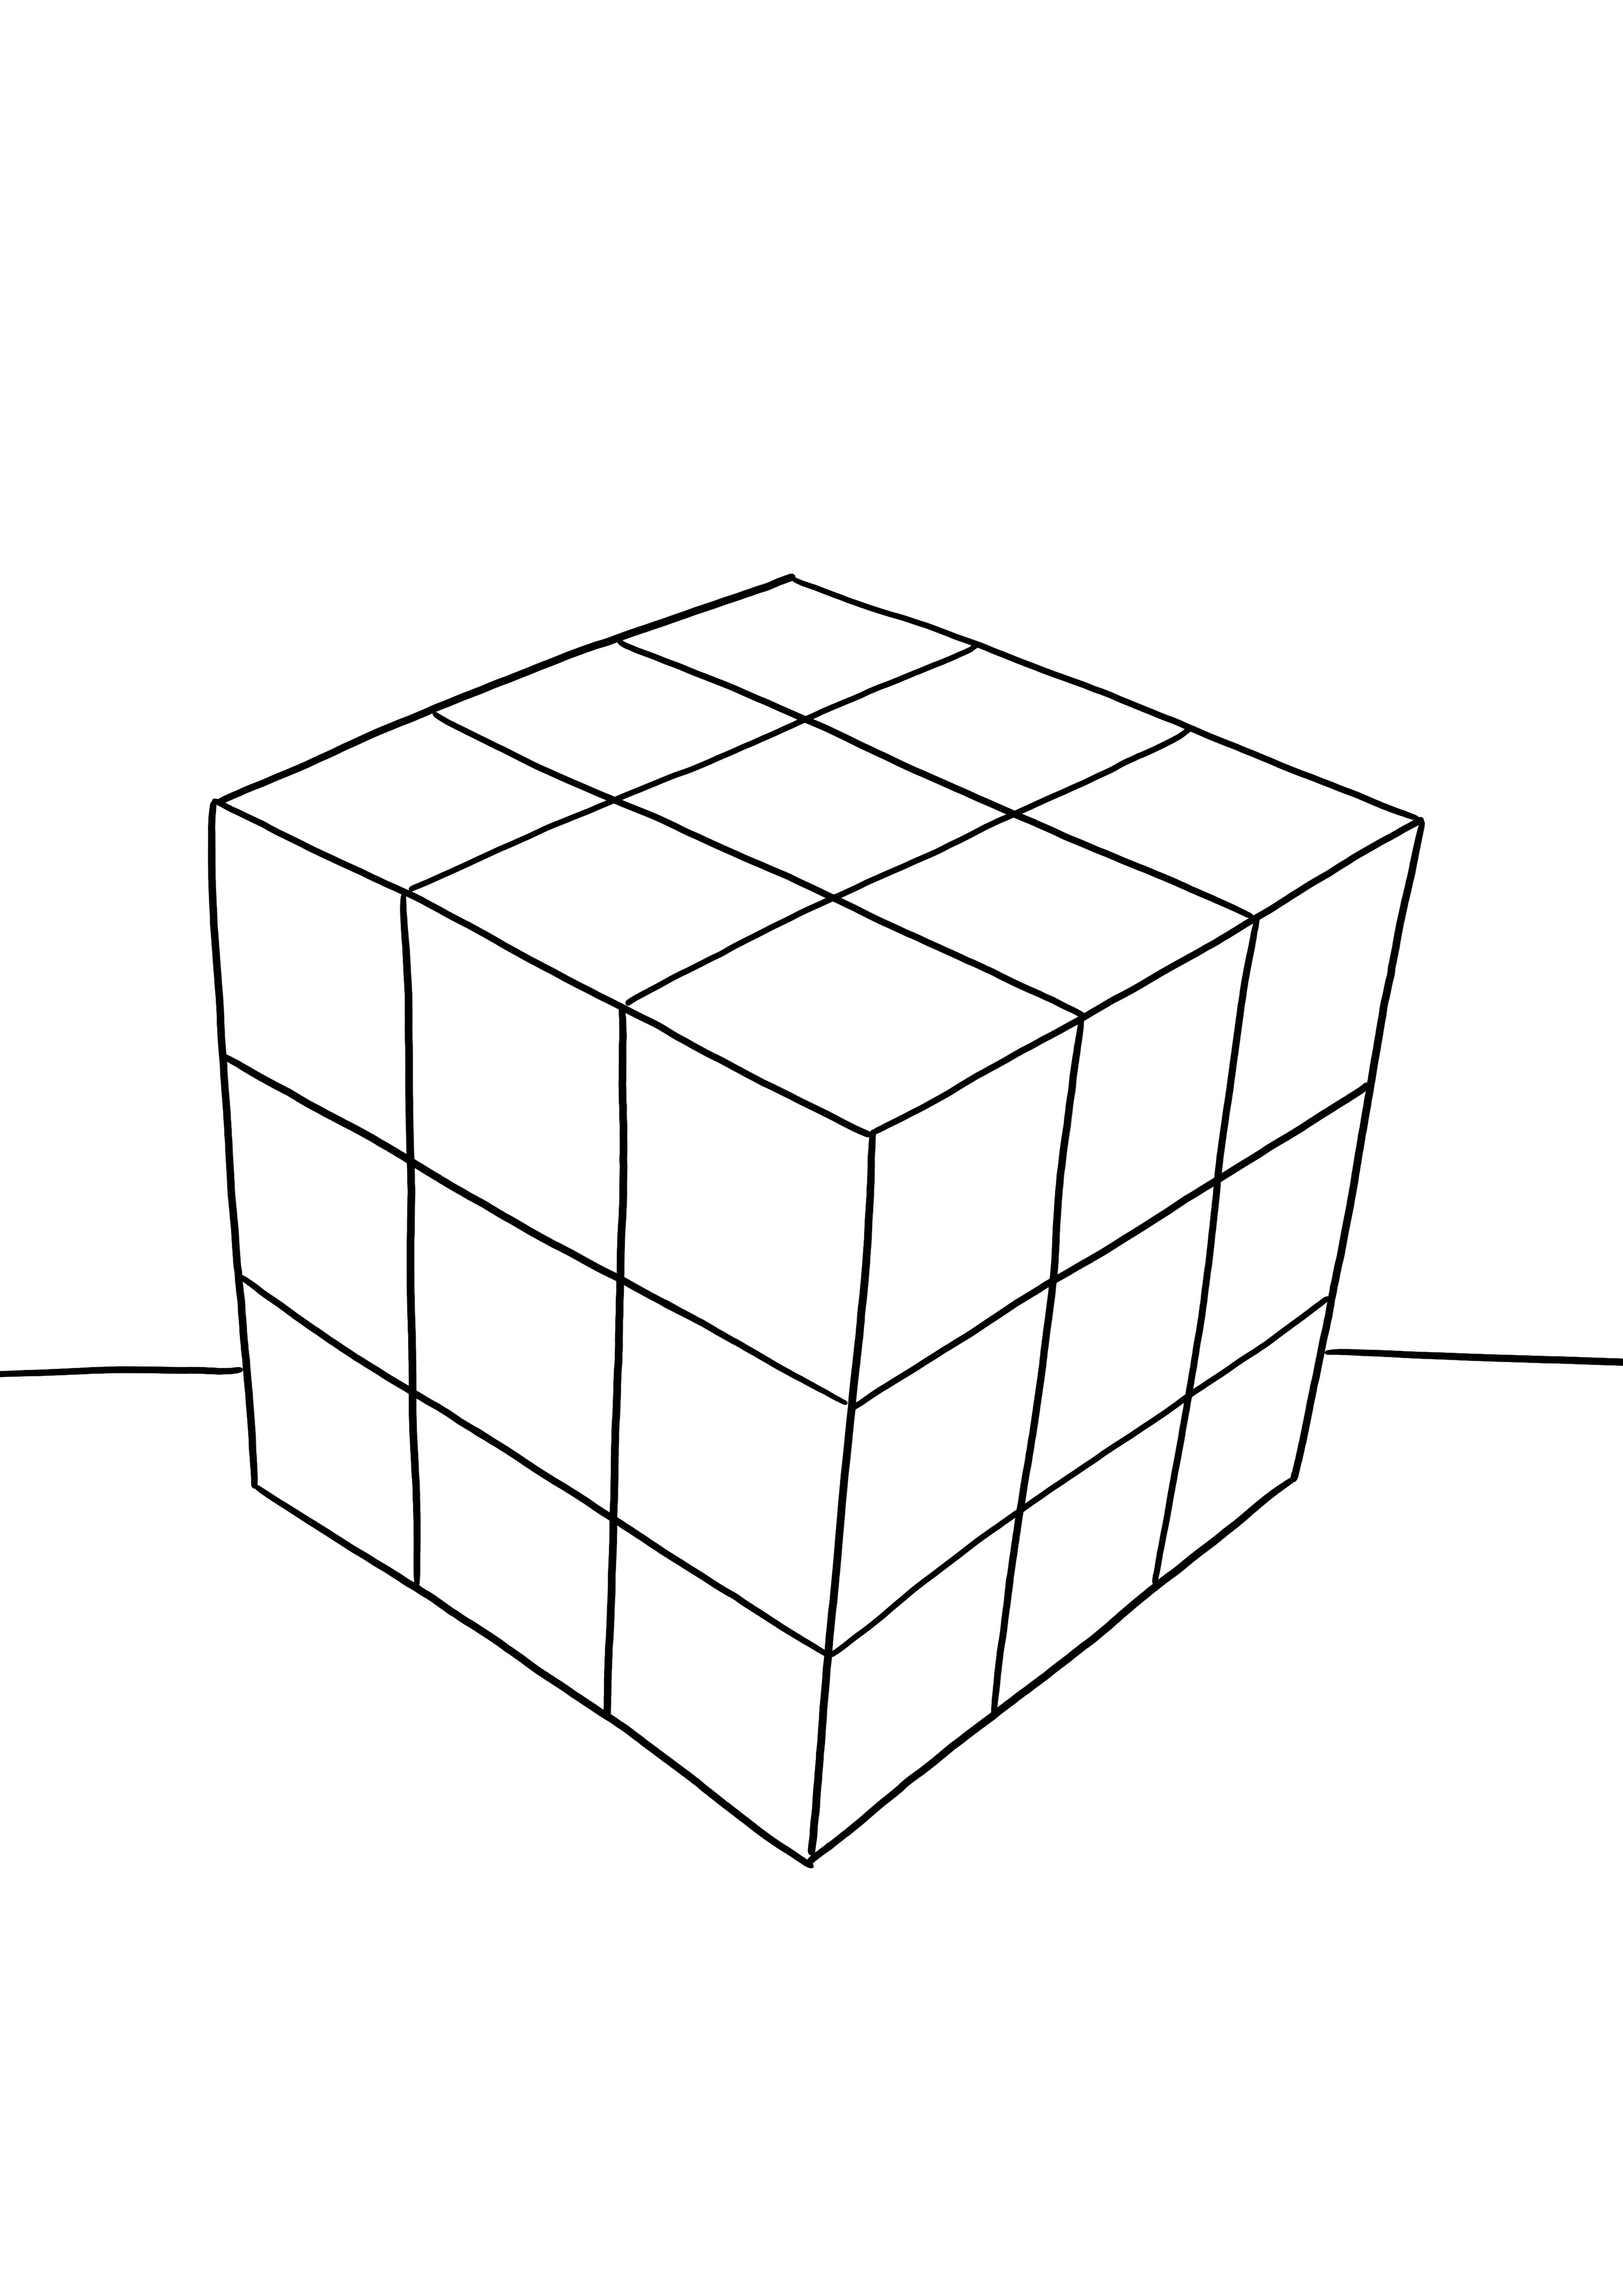 Imprimez et coloriez gratuitement le Rubik's Cube pour que les enfants apprennent à connaître les jouets